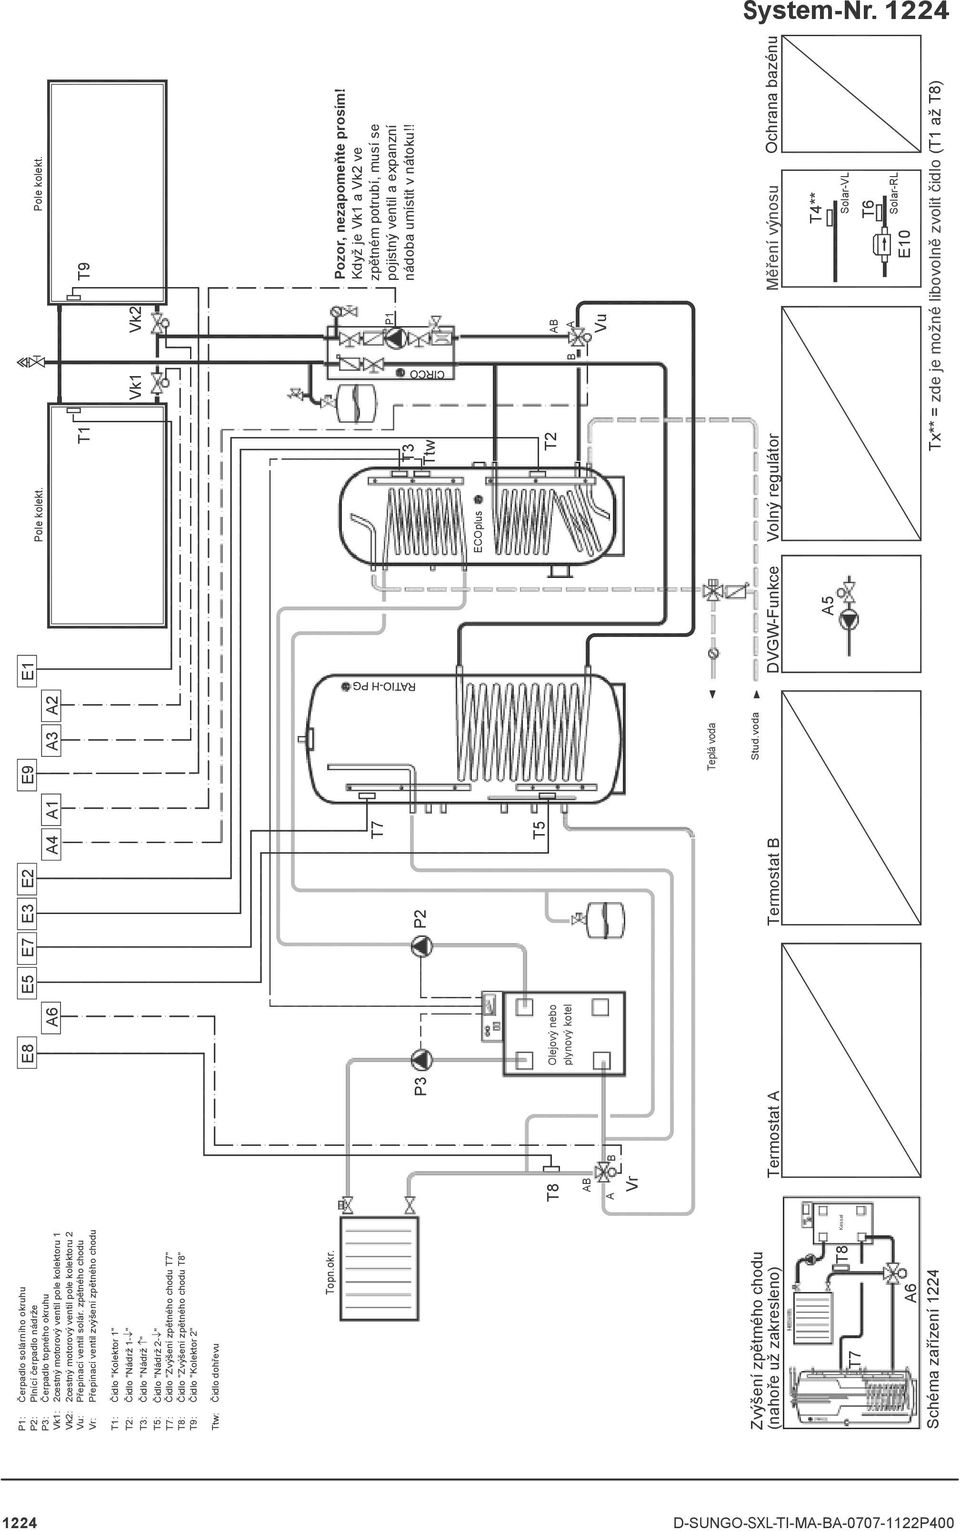 zpětného chodu T1 T9 Přepínací ventil zvýšení zpětného chodu T8 Olejový nebo A B Termostat A Termostat B DVGW-Funkce Volný regulátor Měření výnosu Ochrana bazénu T8 Kessel A6 Schéma zařízení 1224